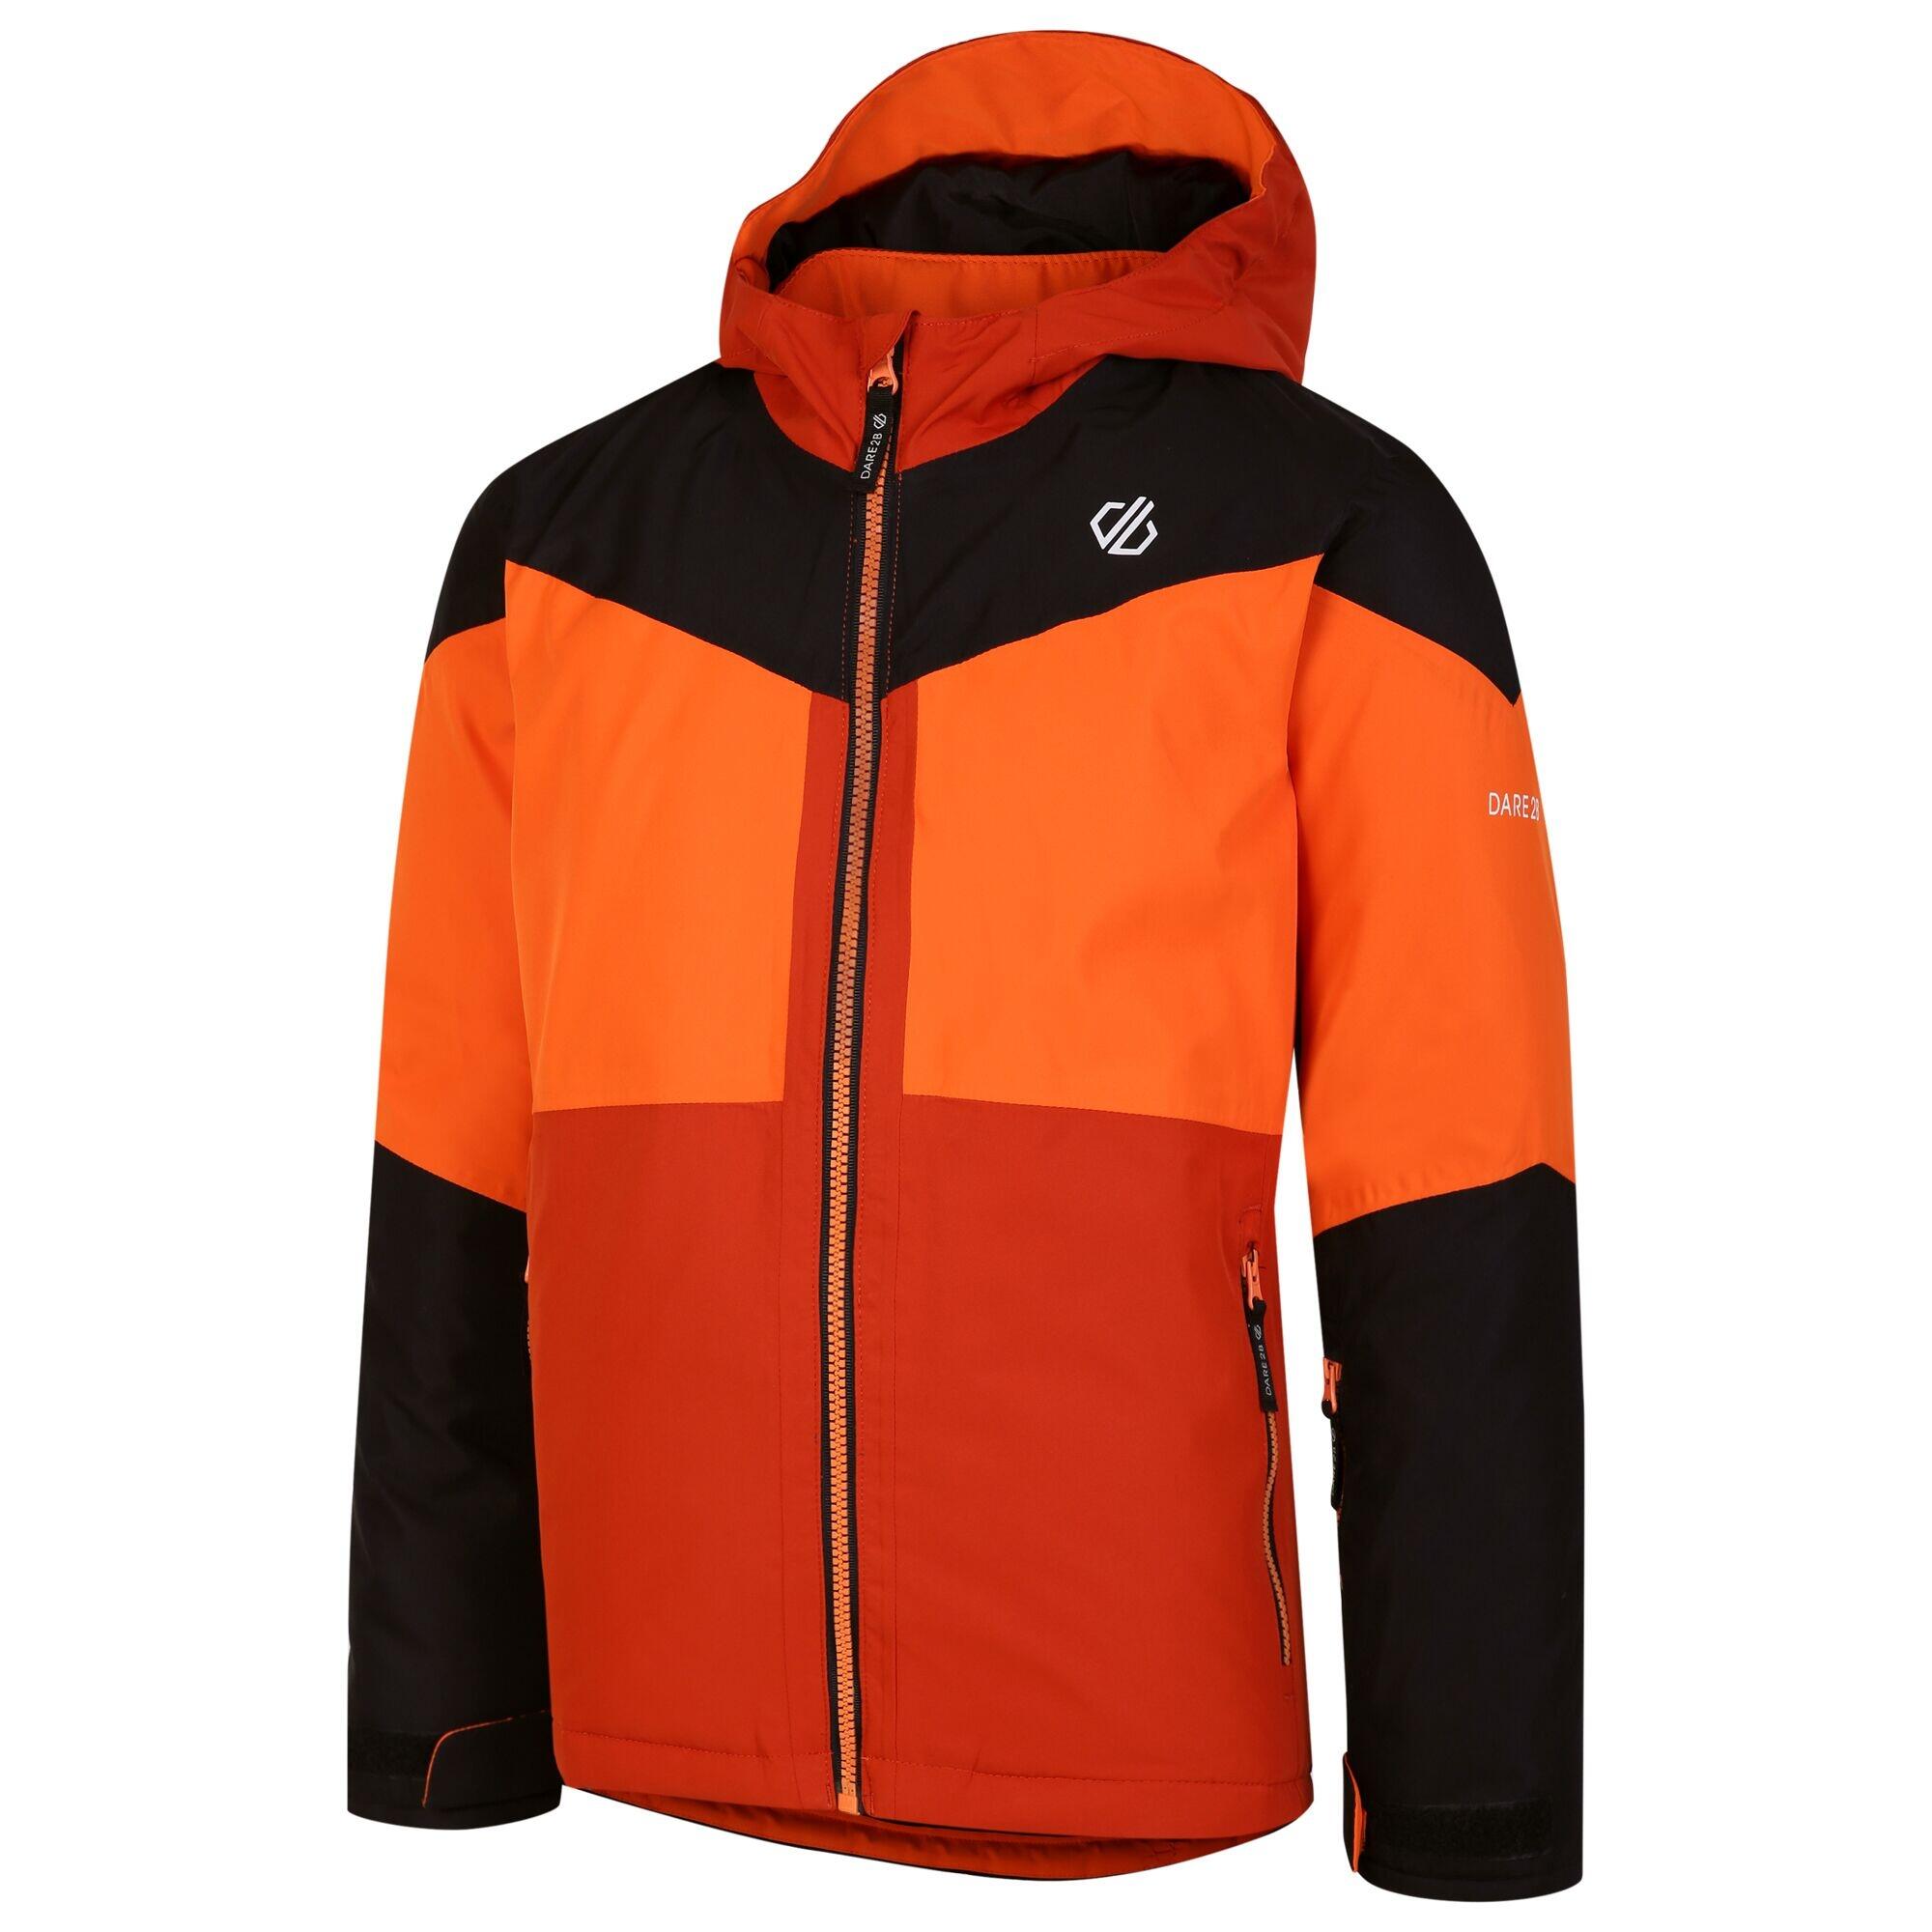 Childrens/Kids Slush Ski Jacket (Black/Puffins Orange) 4/5